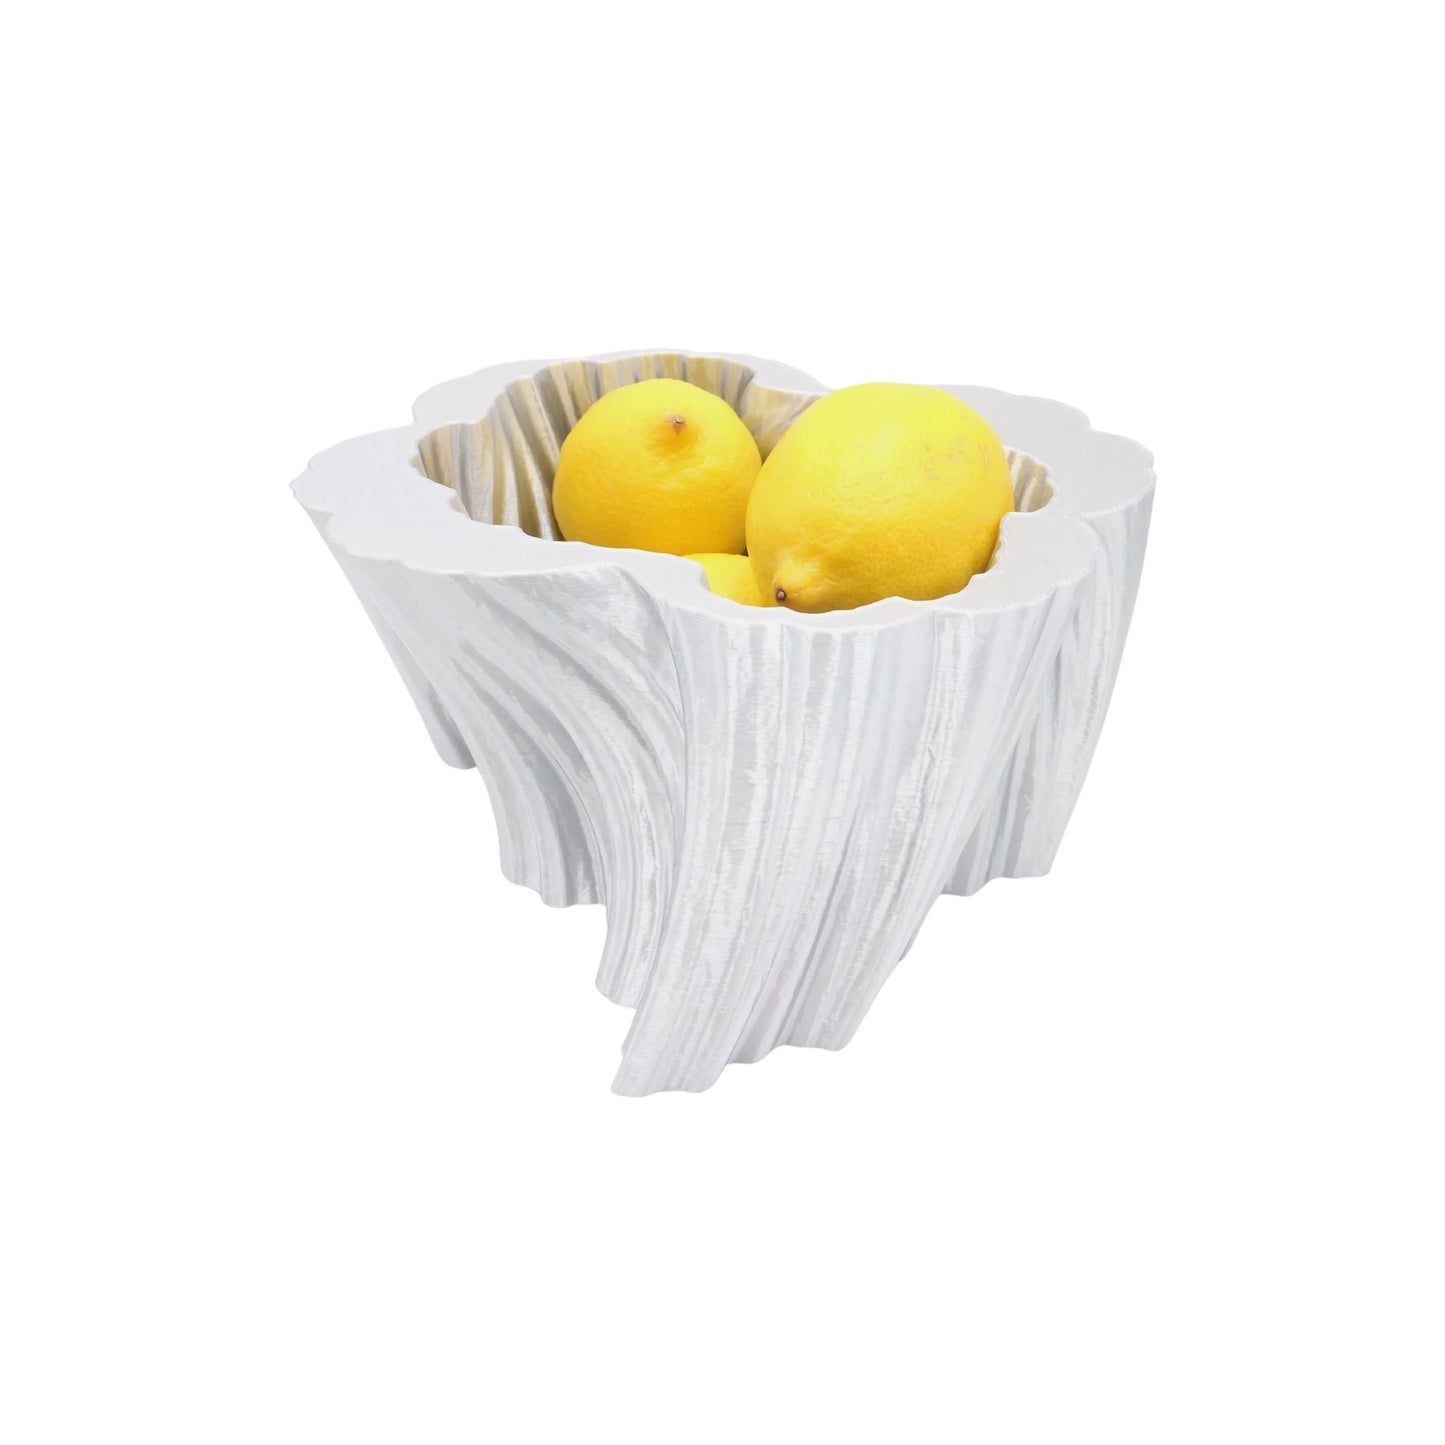 Corallo fruit bowl